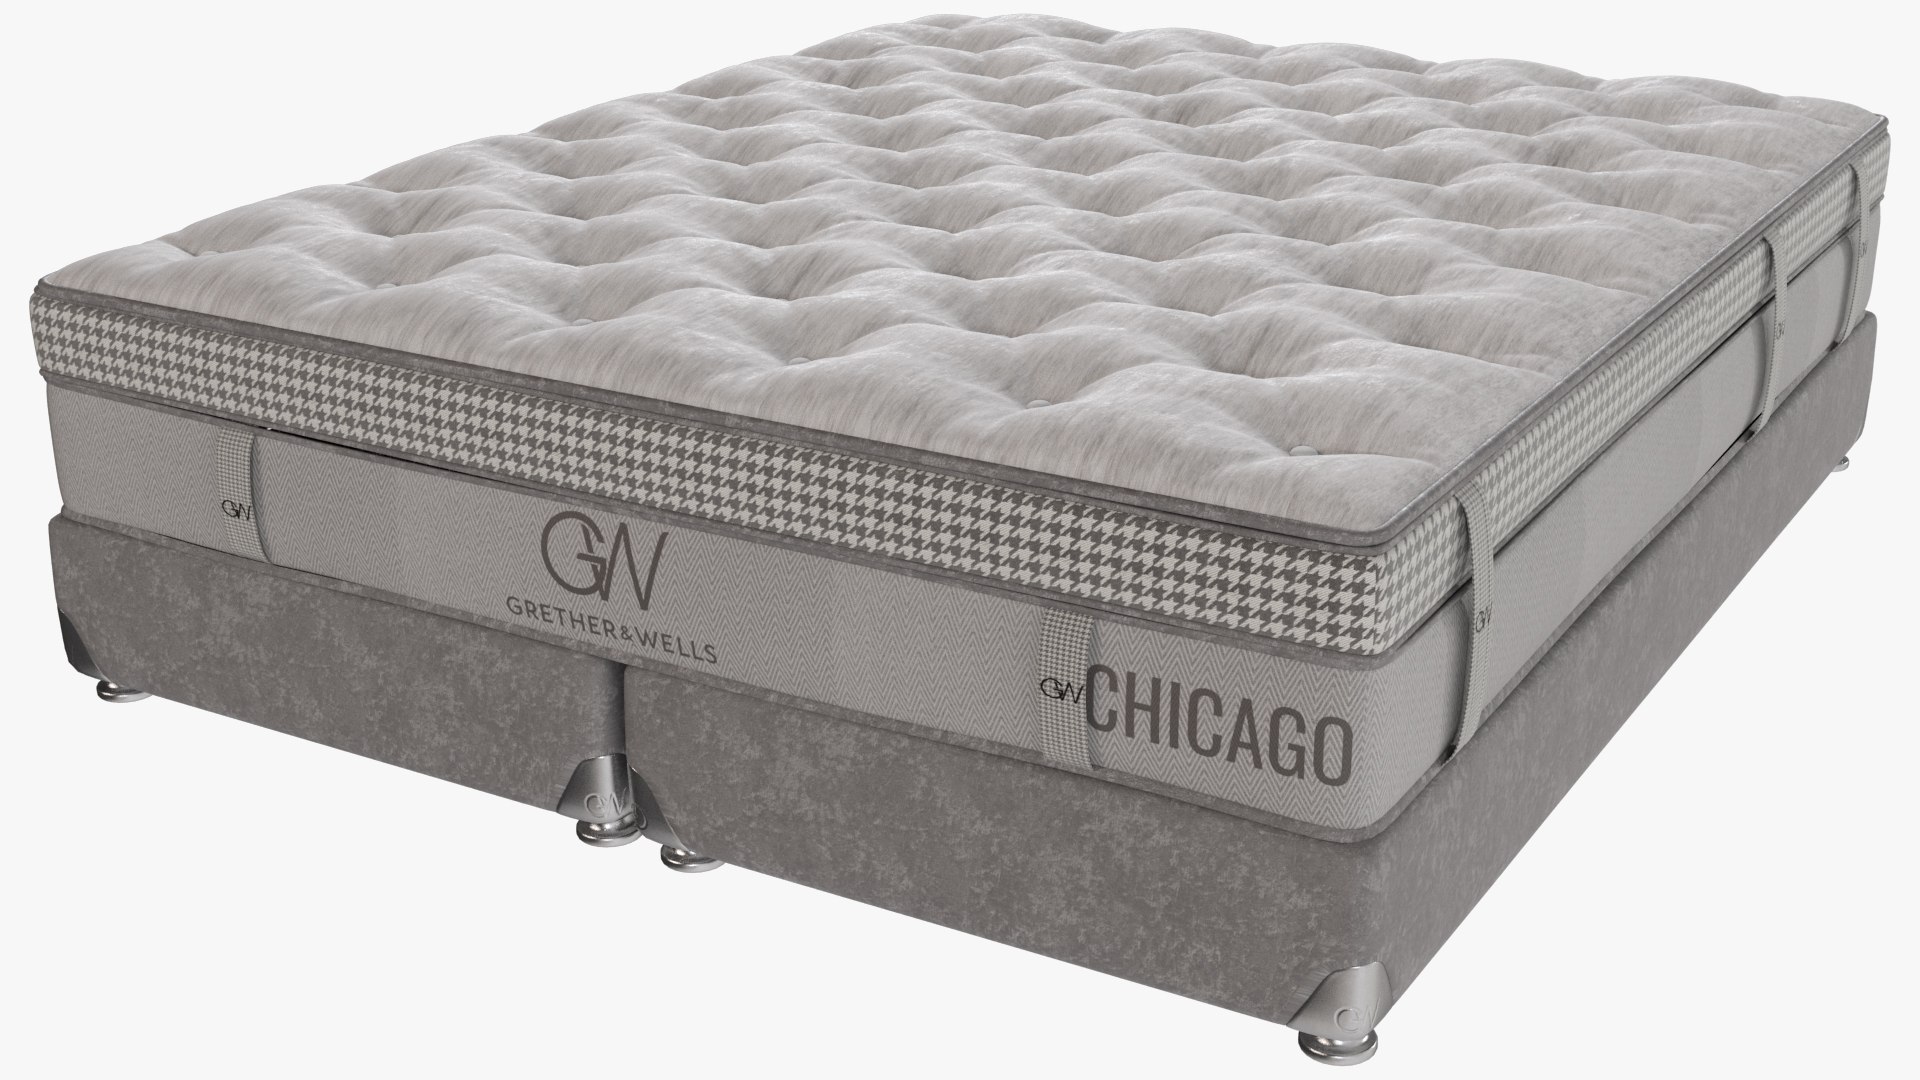 fbr furniture mattress chicago il 60610